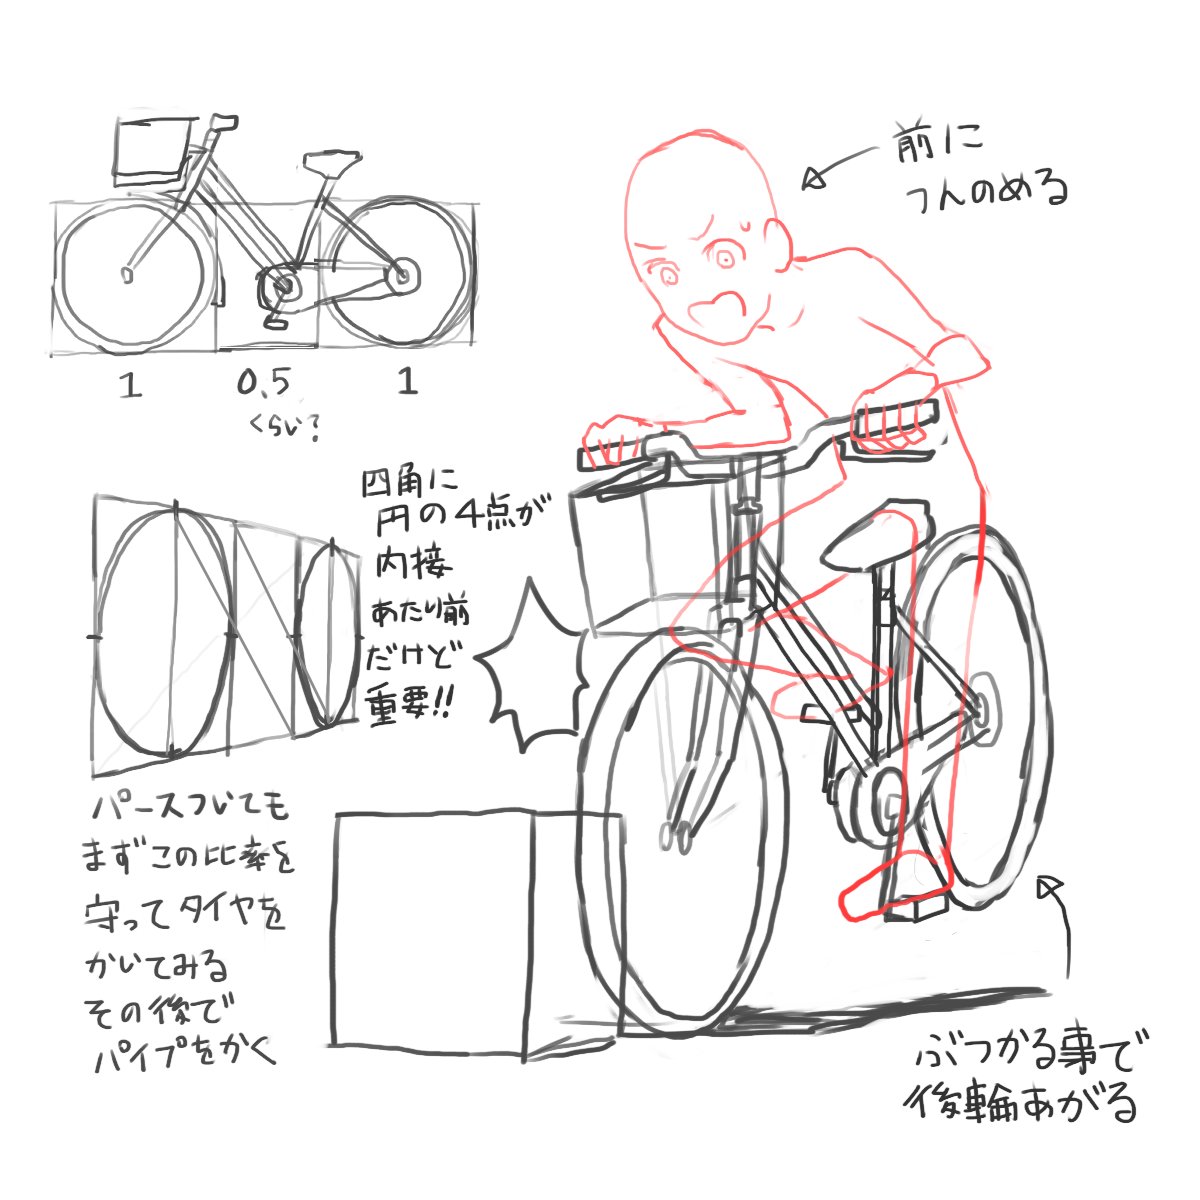 アニメ私塾ネット村にてお互い添削をしました 自転車で物にぶつかった というシーン カネゴンの漫画